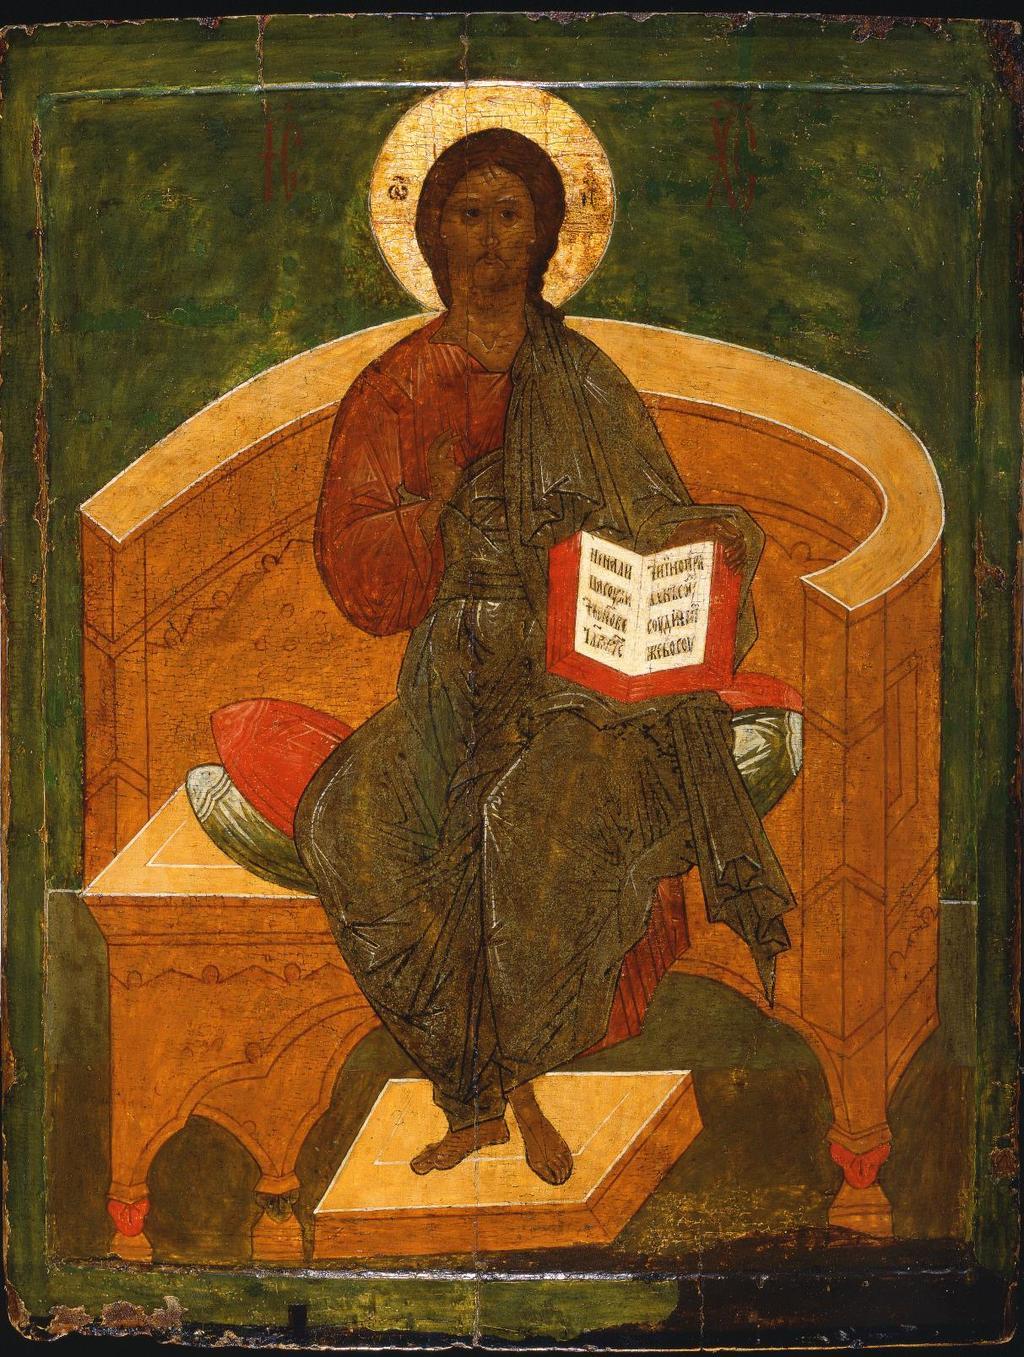 Cristo in maestà Provincia russa, XVI secolo tempera su tavola, 67,4 x 53,1 cm